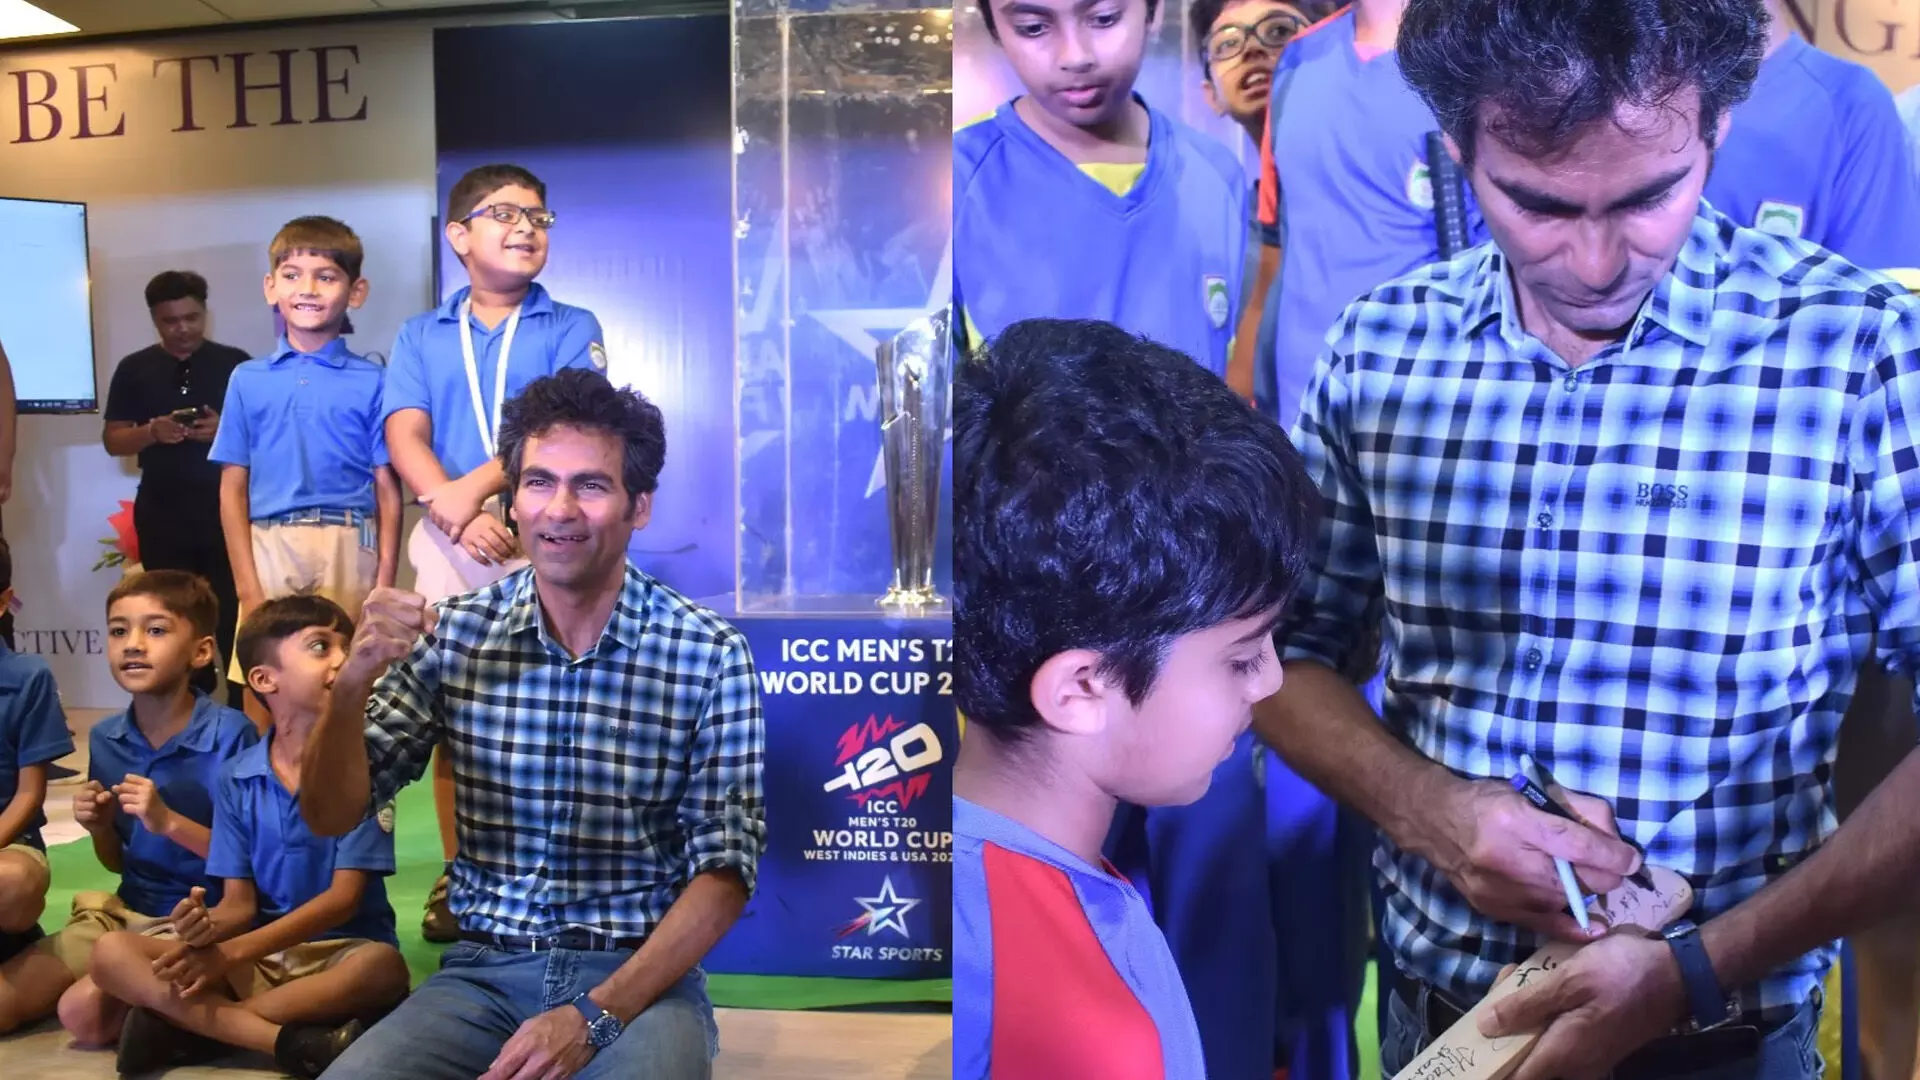 मोहम्मद कैफ की उपस्थिति में टी20 विश्व कप ट्रॉफी मुंबई के स्कूल परिसर में लाई गई